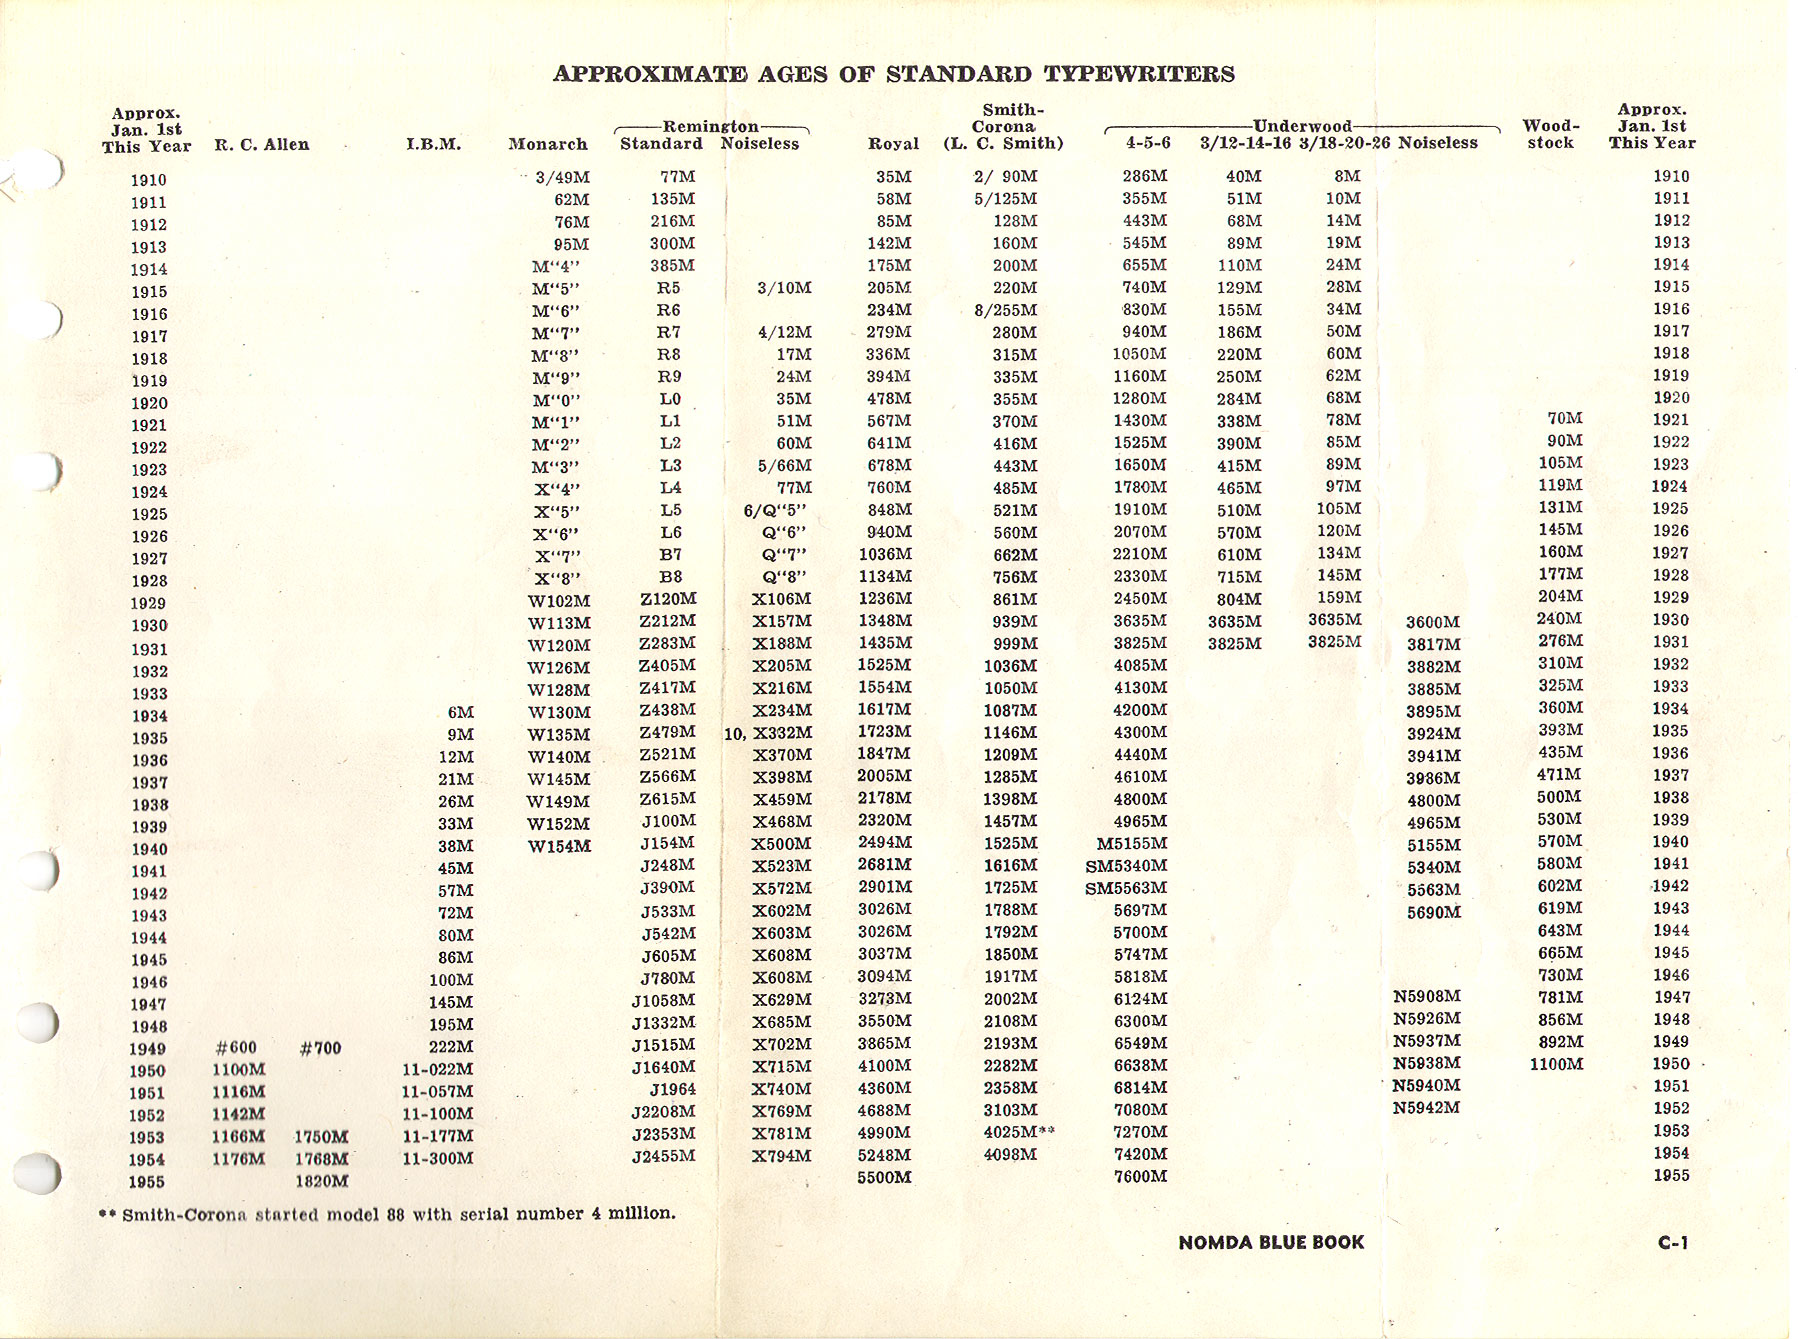 remington 600 serial number dates